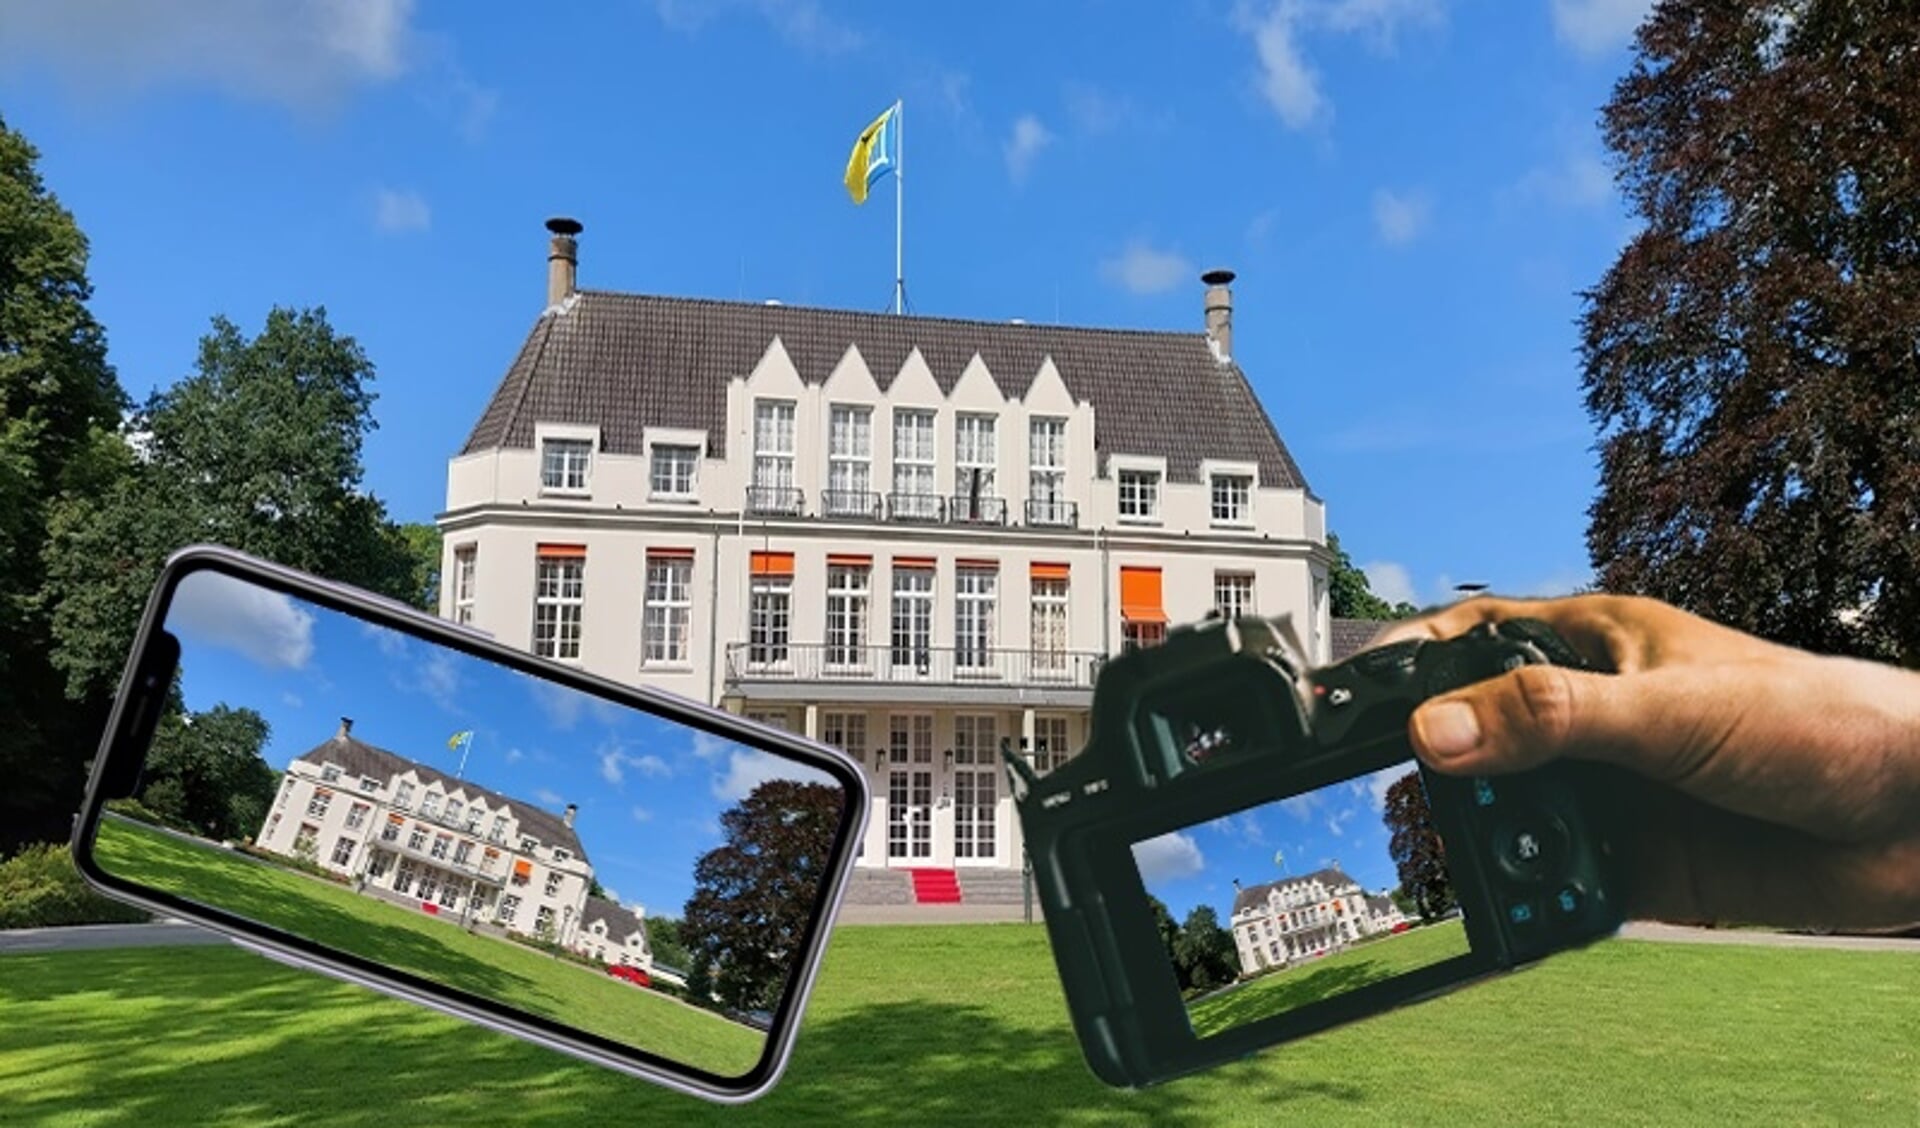 De gemeente De Bilt kan met camera of mobieltje ‘mooi’ worden vastgelegd. 